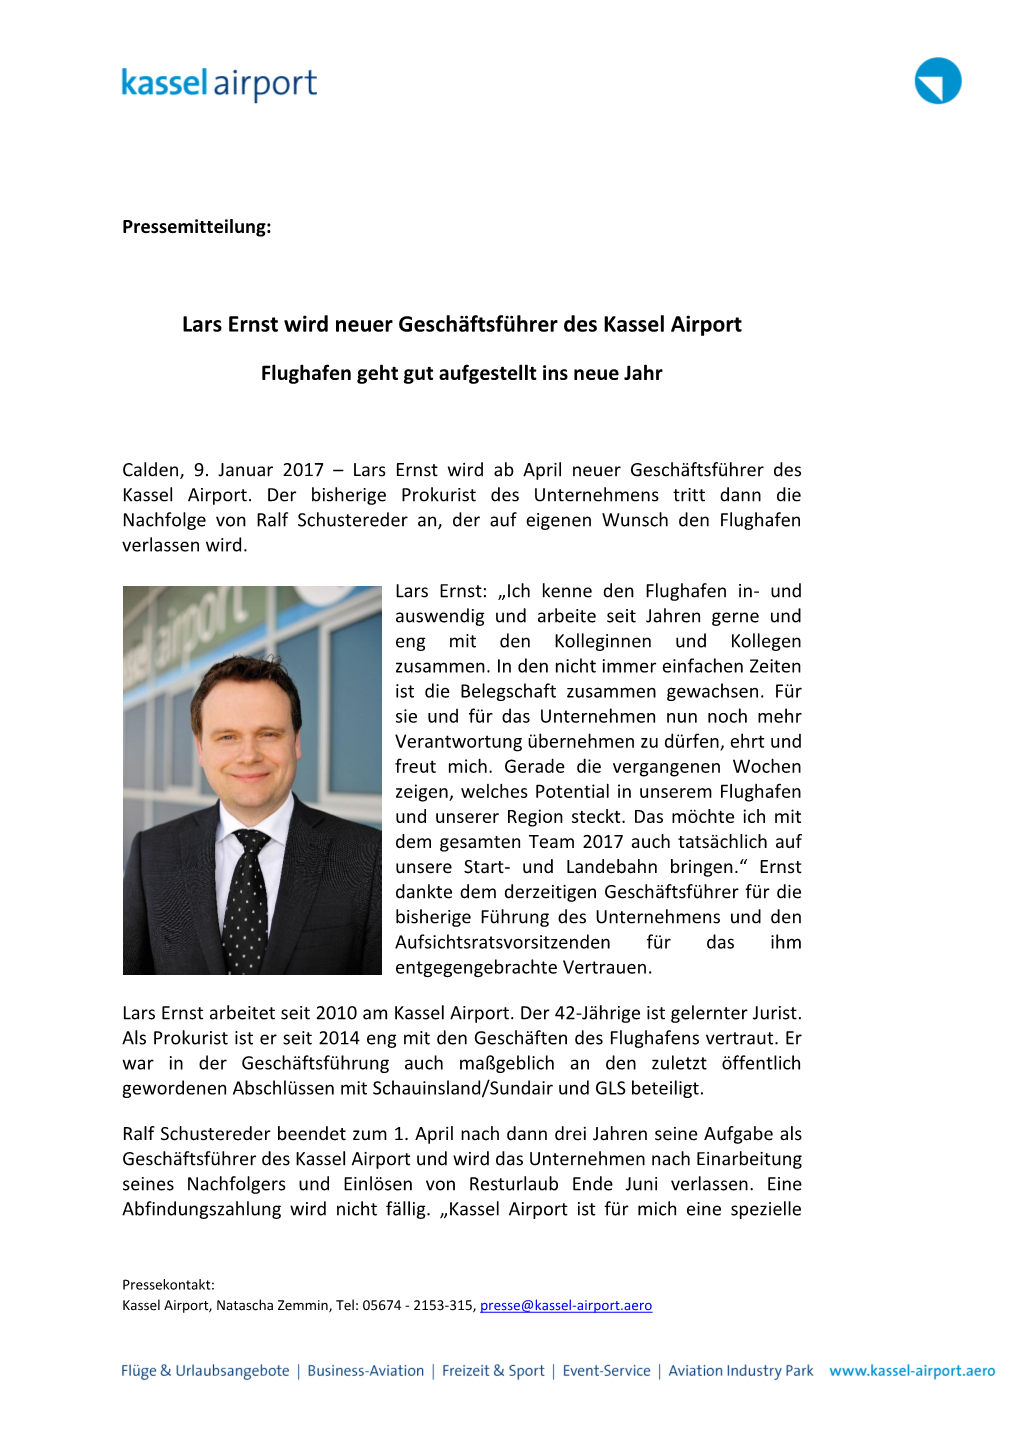 Lars Ernst Wird Neuer Geschäftsführer Des Kassel Airport